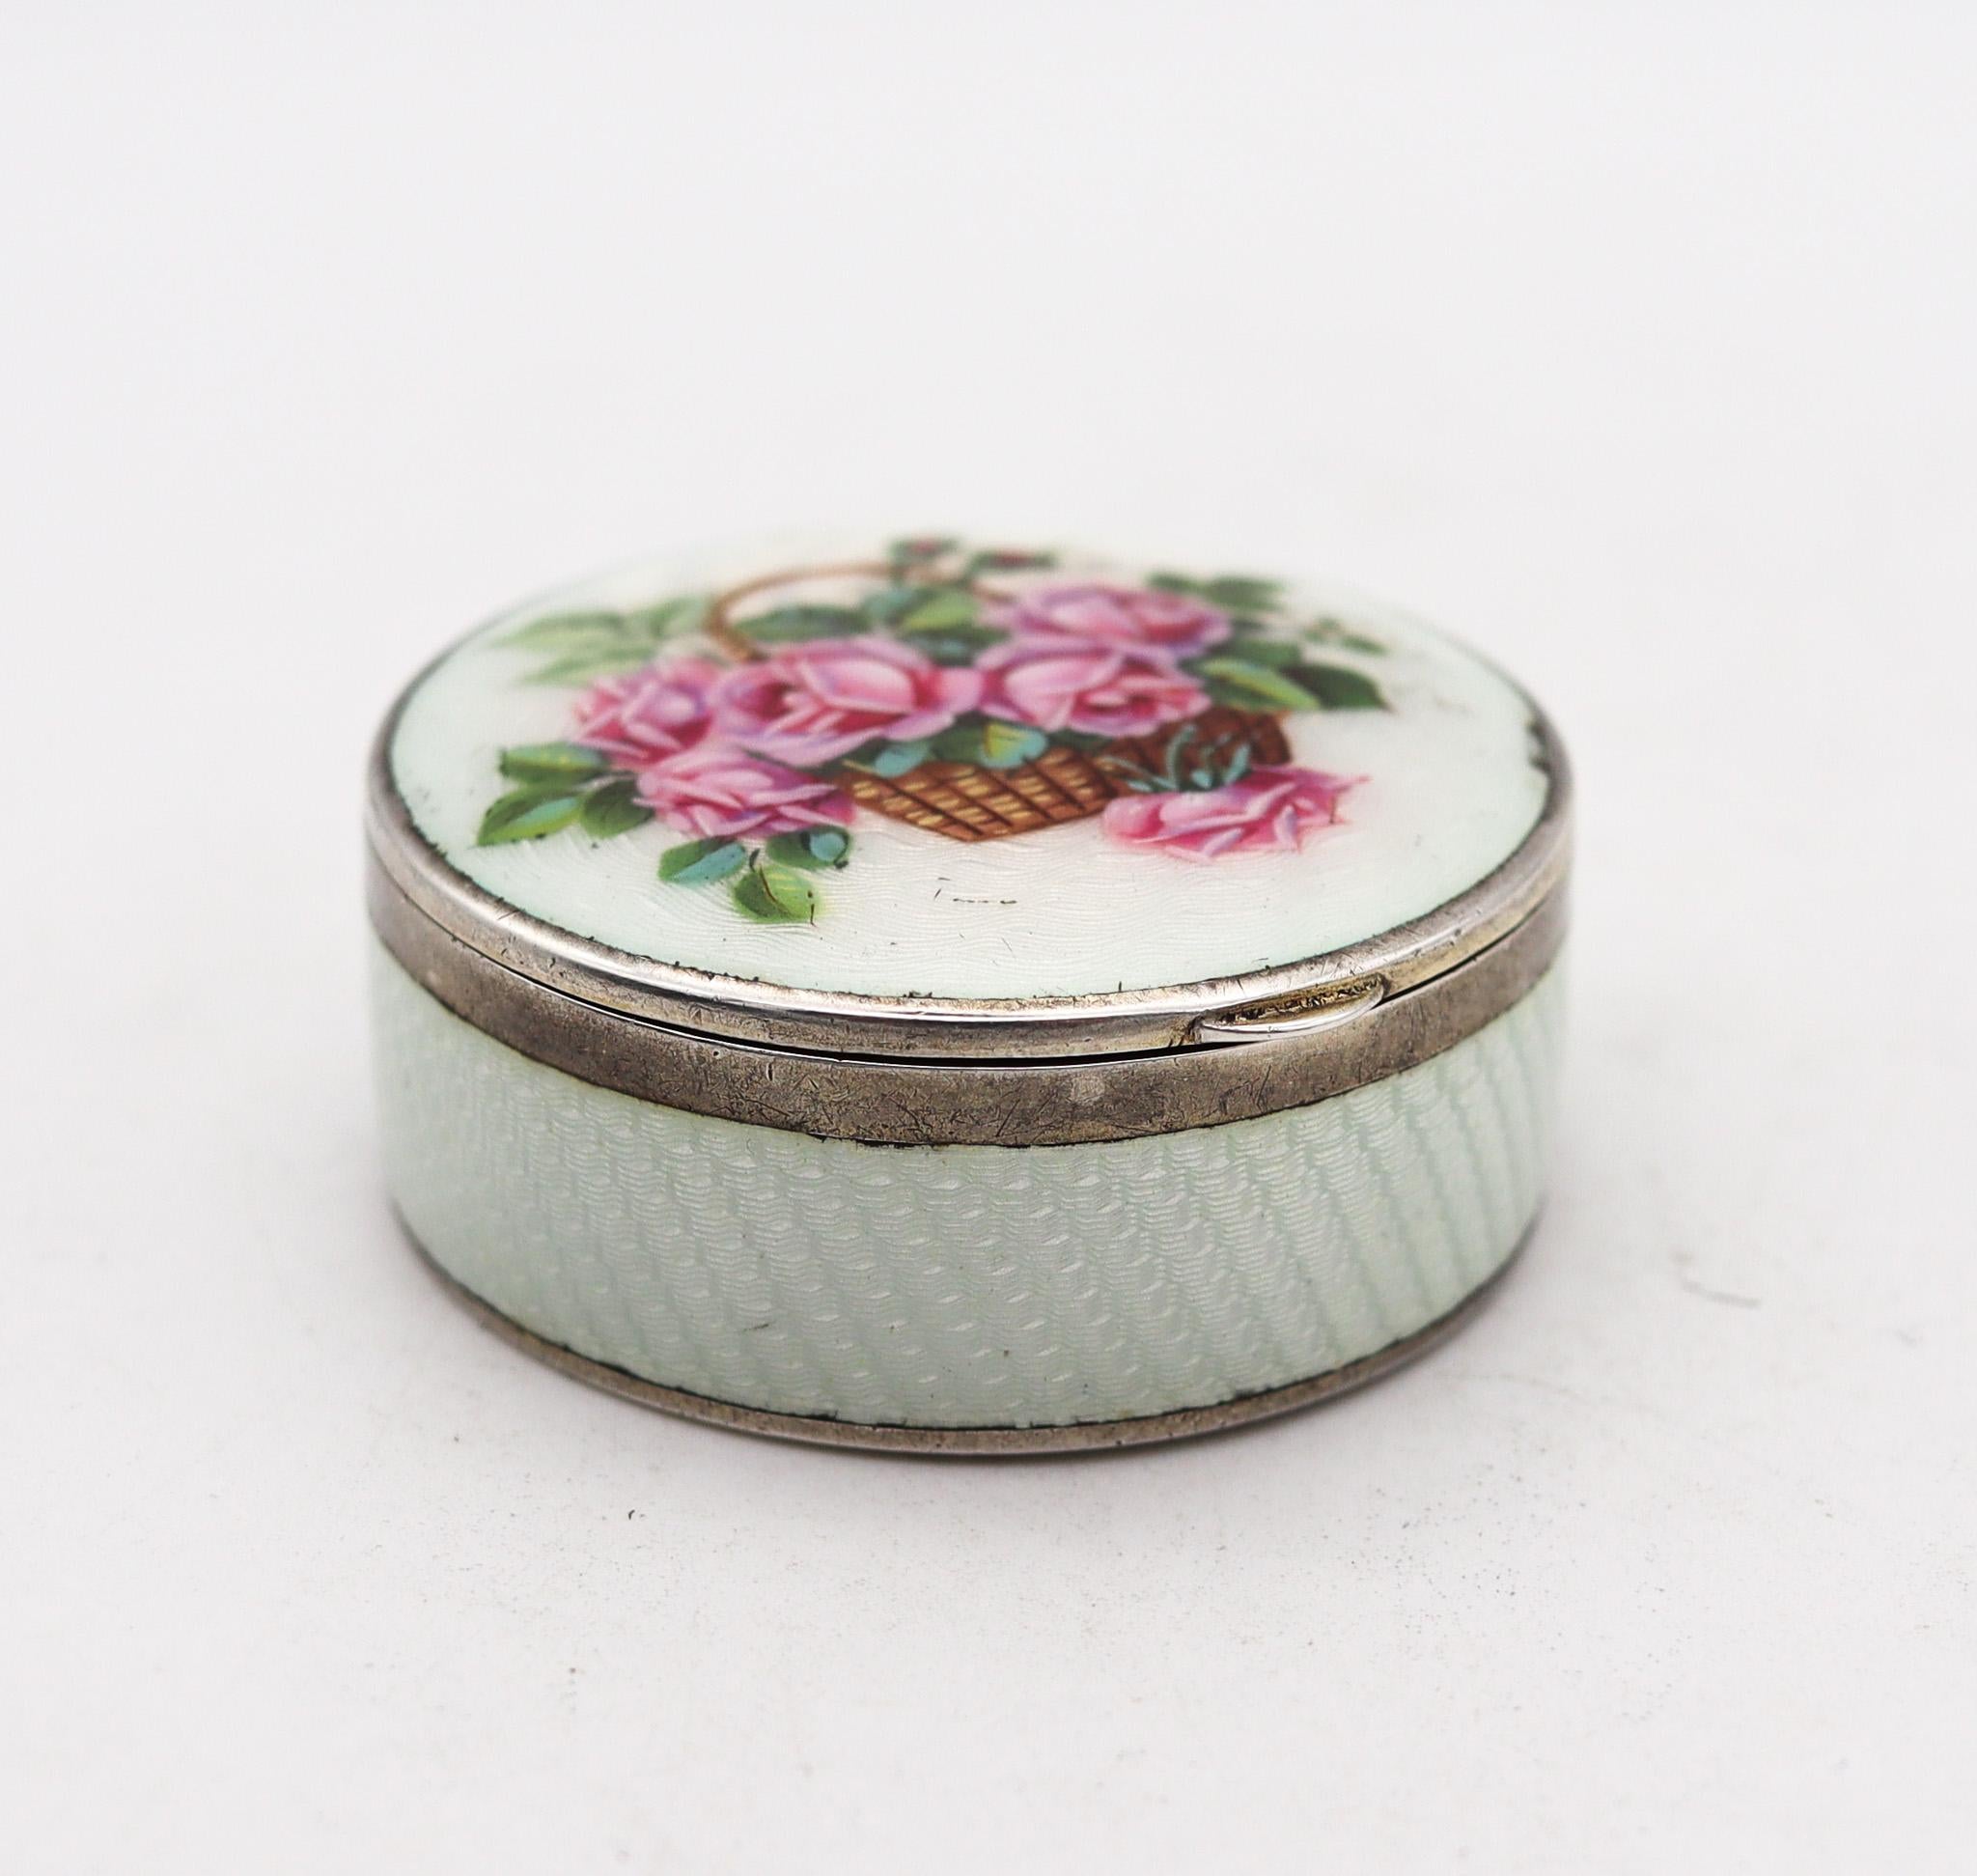 Boîte ronde émaillée guillochée avec des fleurs

Magnifique boîte ronde émaillée, créée à Pforzheim en Allemagne, au cours de la période de l'art nouveau dans les années 1910. Cette magnifique boîte a été soigneusement fabriquée avec des détails